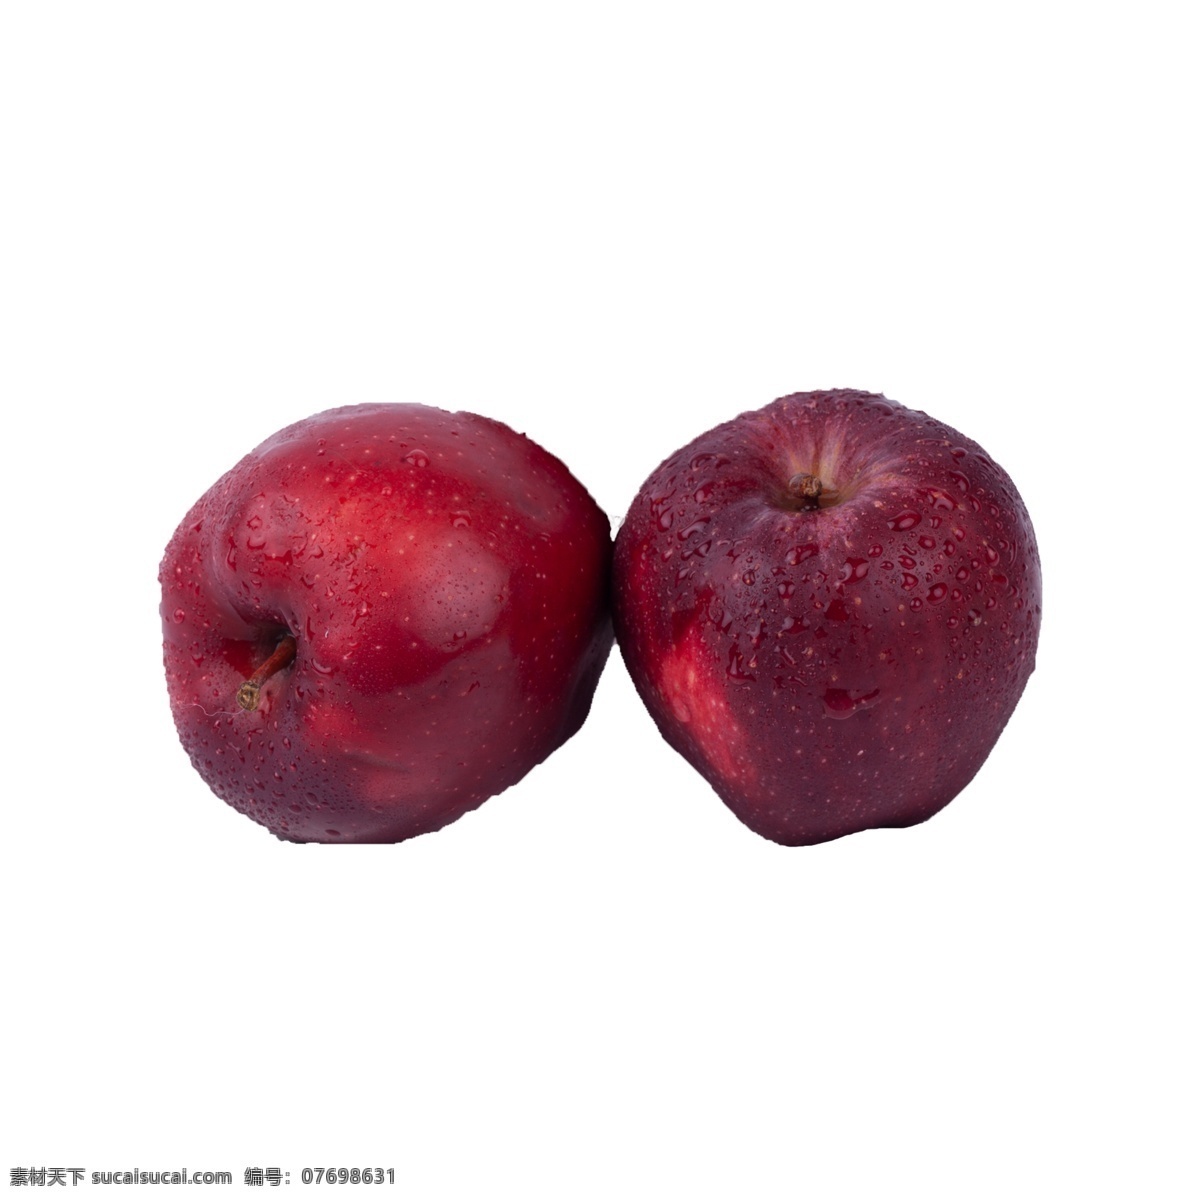 苹果 实拍 免 抠 水果 营养 红富士 红苹果 实物 拍摄 摆拍 红富士免抠 植物 进口 甘甜